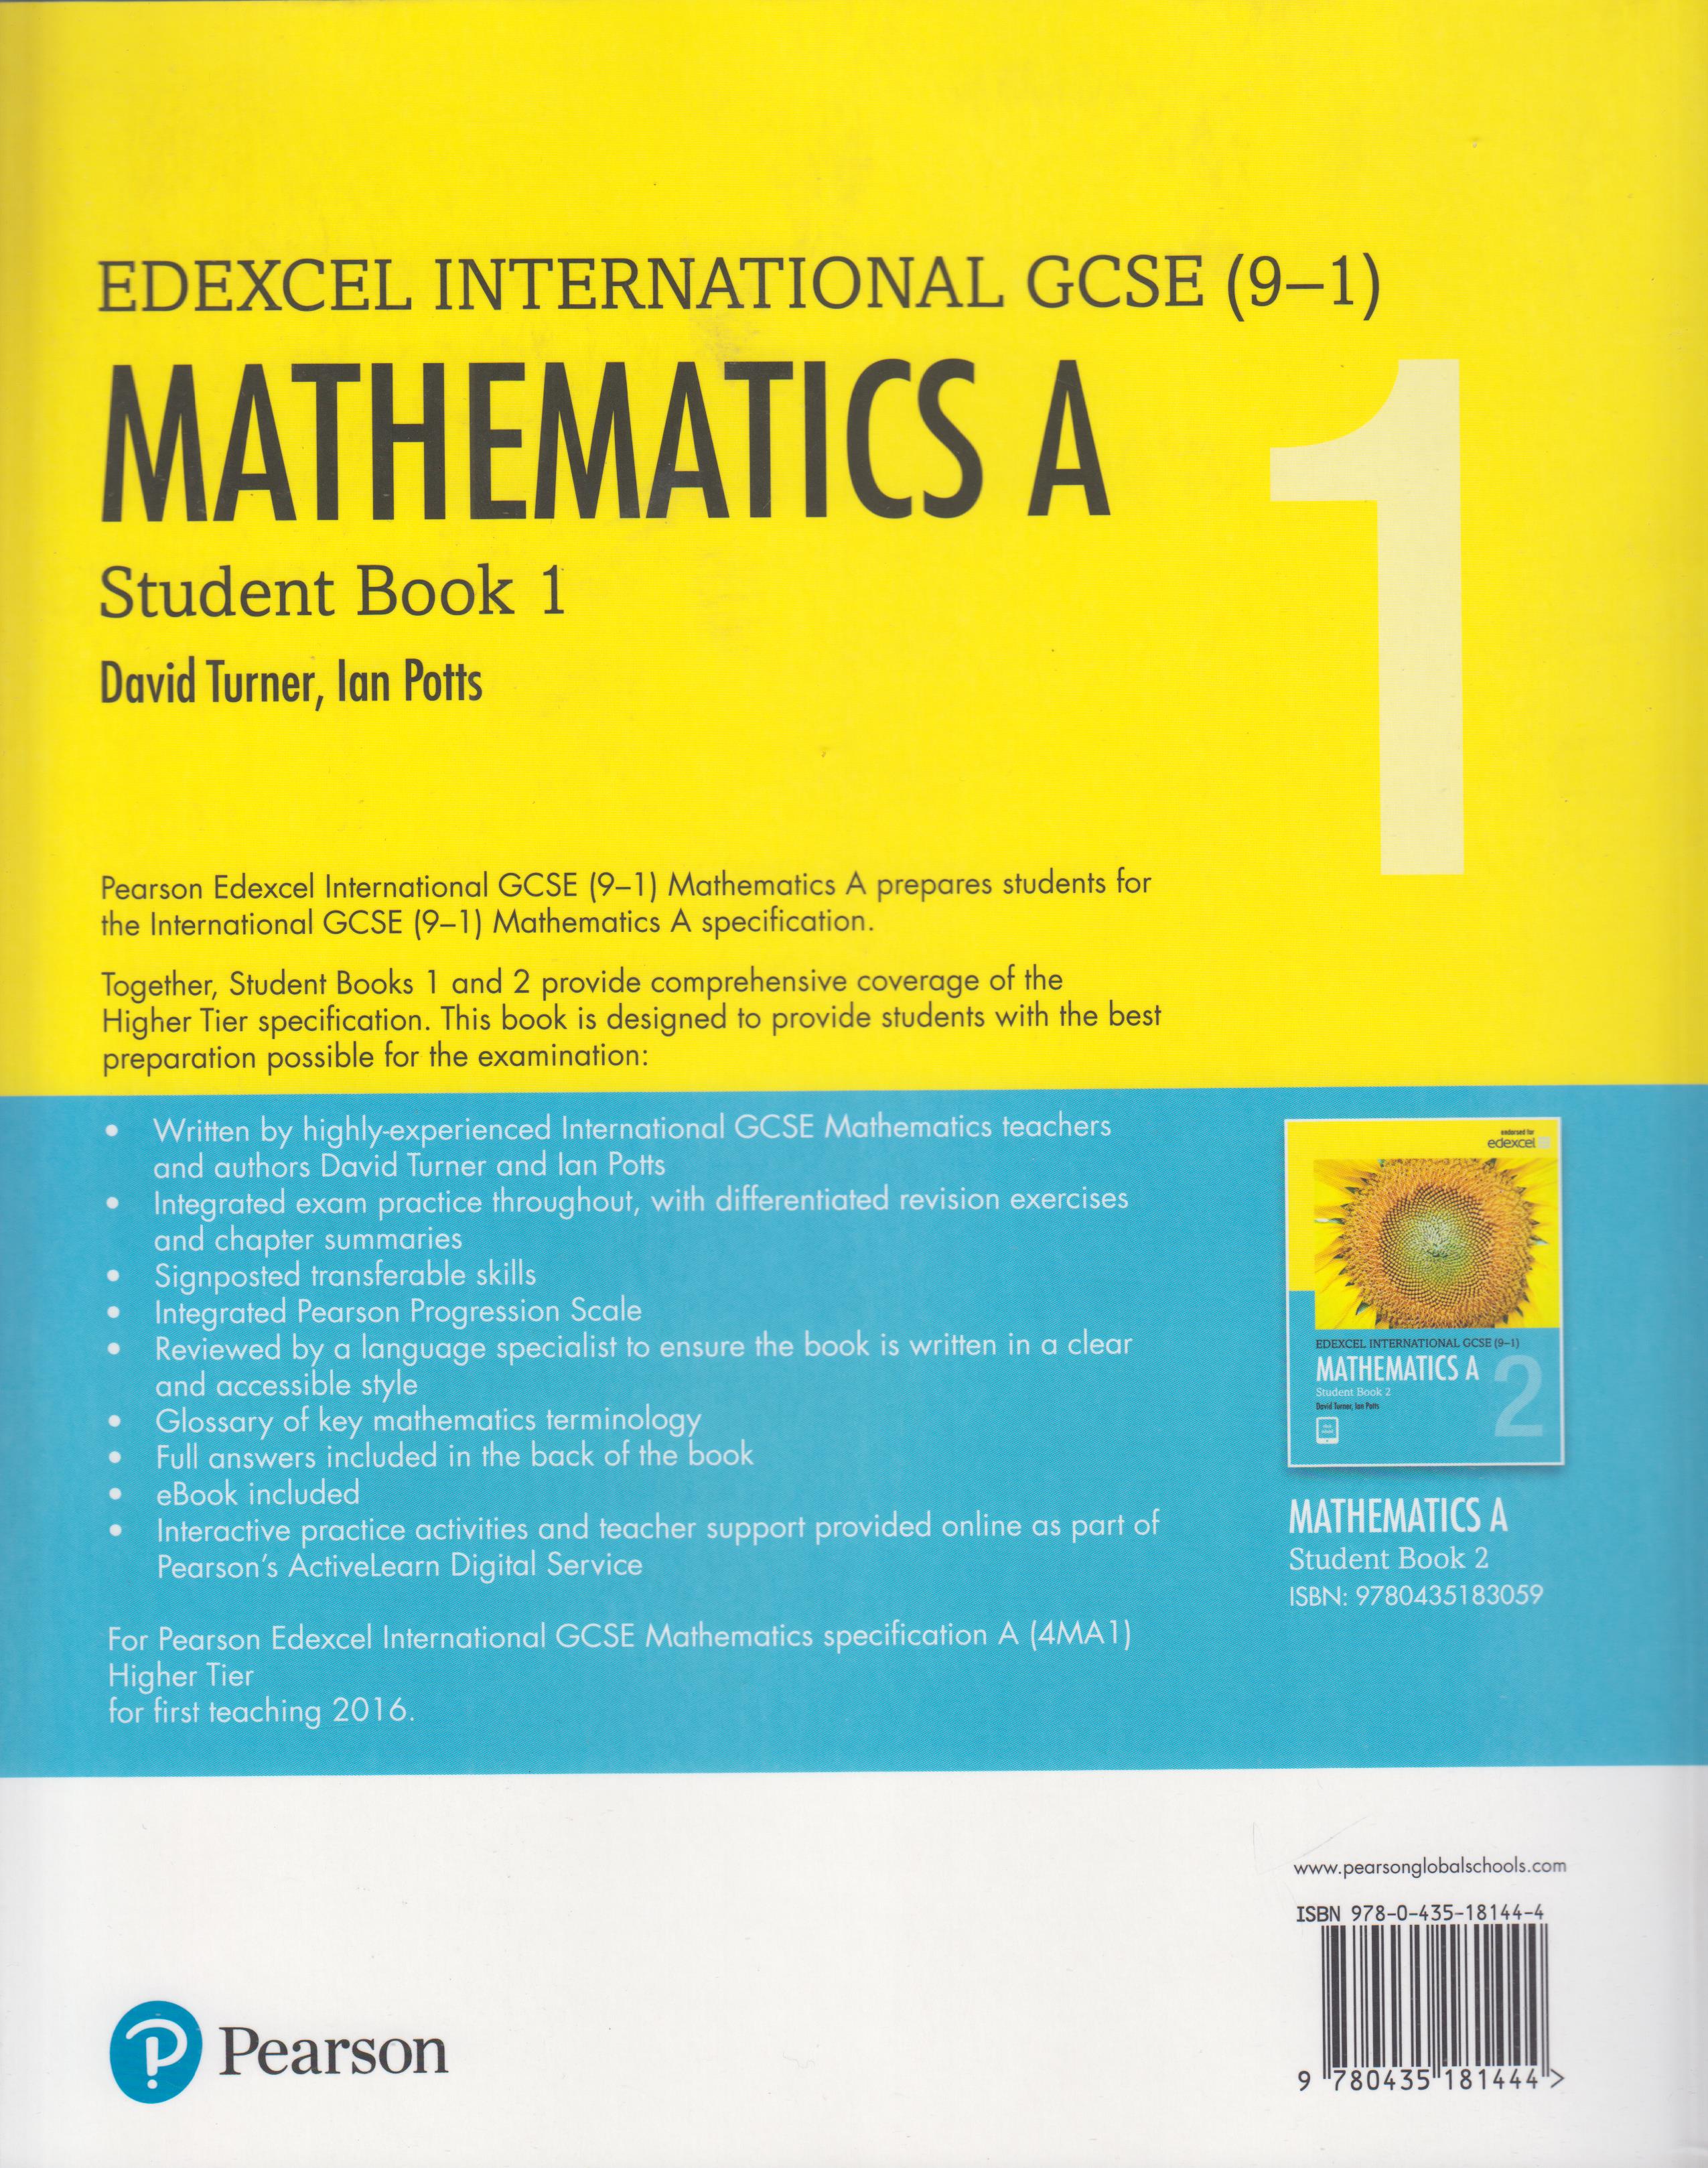 edexcel-international-gcse-9-1-mathematics-a-student-book-1-text